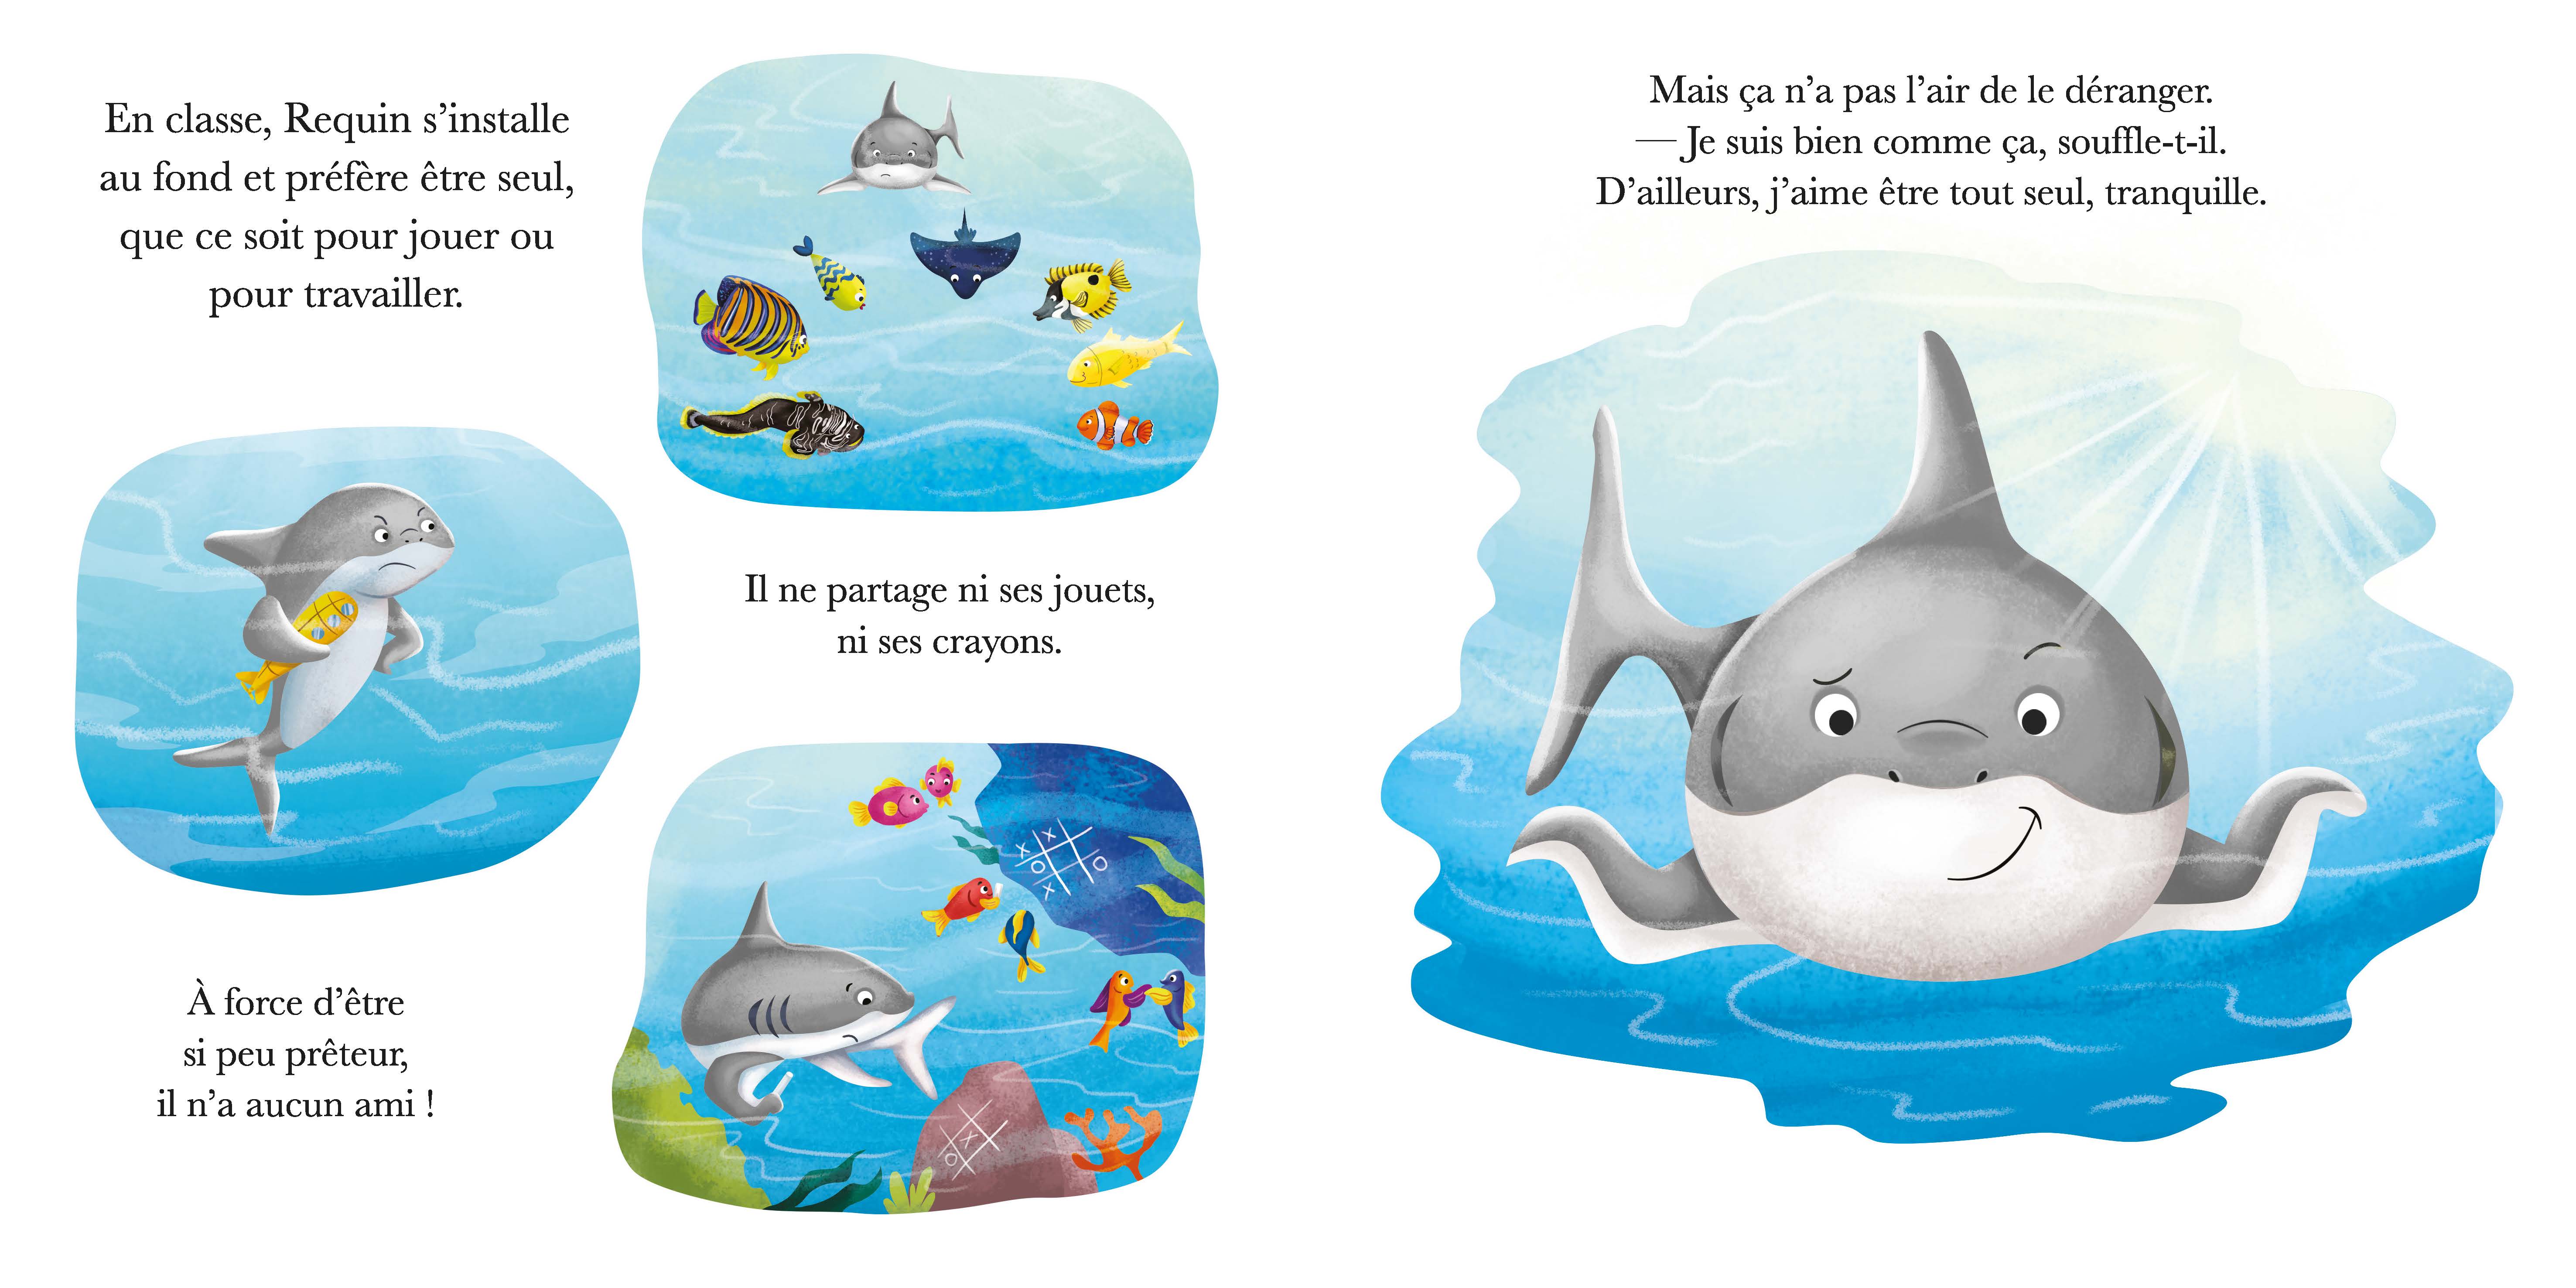 Requin N'est Pas Partageur - Oh La La ! Les Emotions !